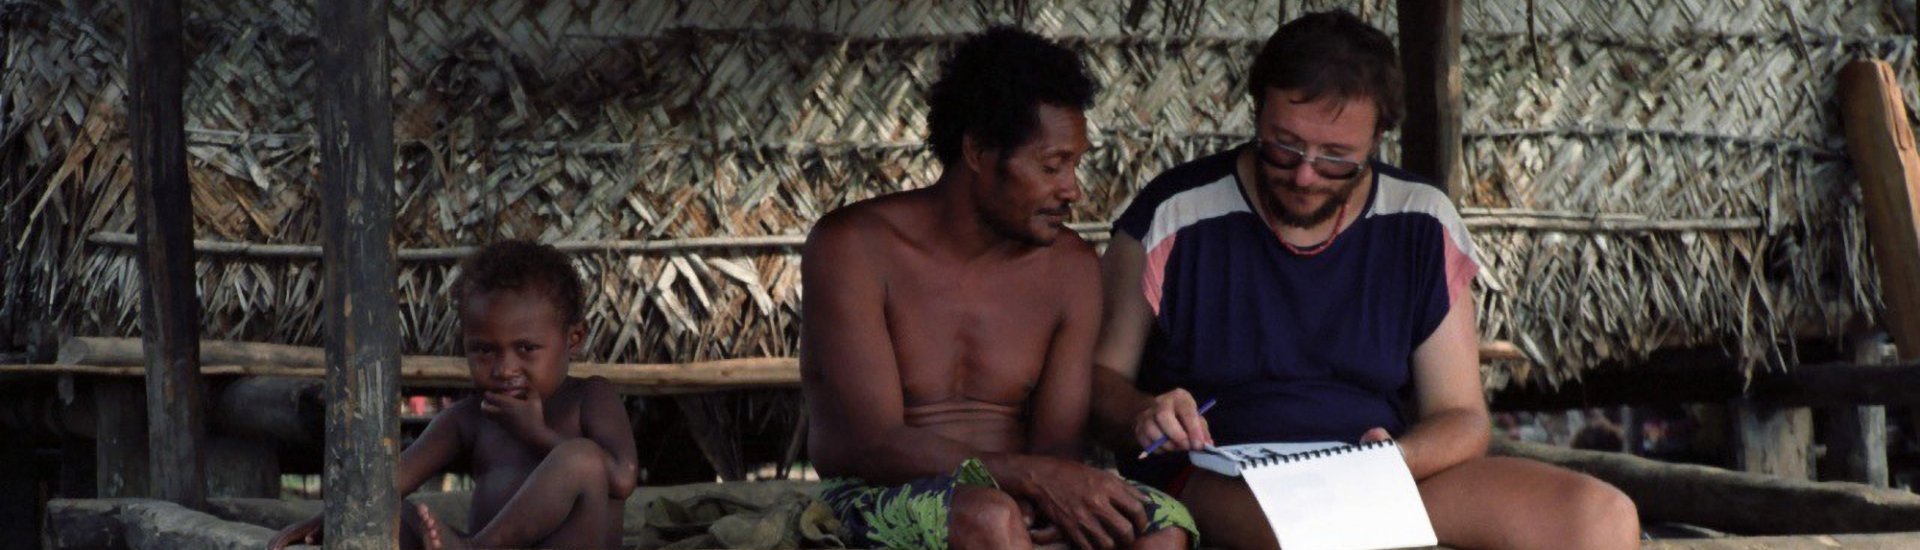 Onderzoeker Gunter Senft (r) is in gesprek met een spreker van de Kilivila-taal, tijdens zijn onderzoek op de Kiriwina-eilanden in Papoea-Nieuw-Guinea. (Foto: Stephen Levinson)